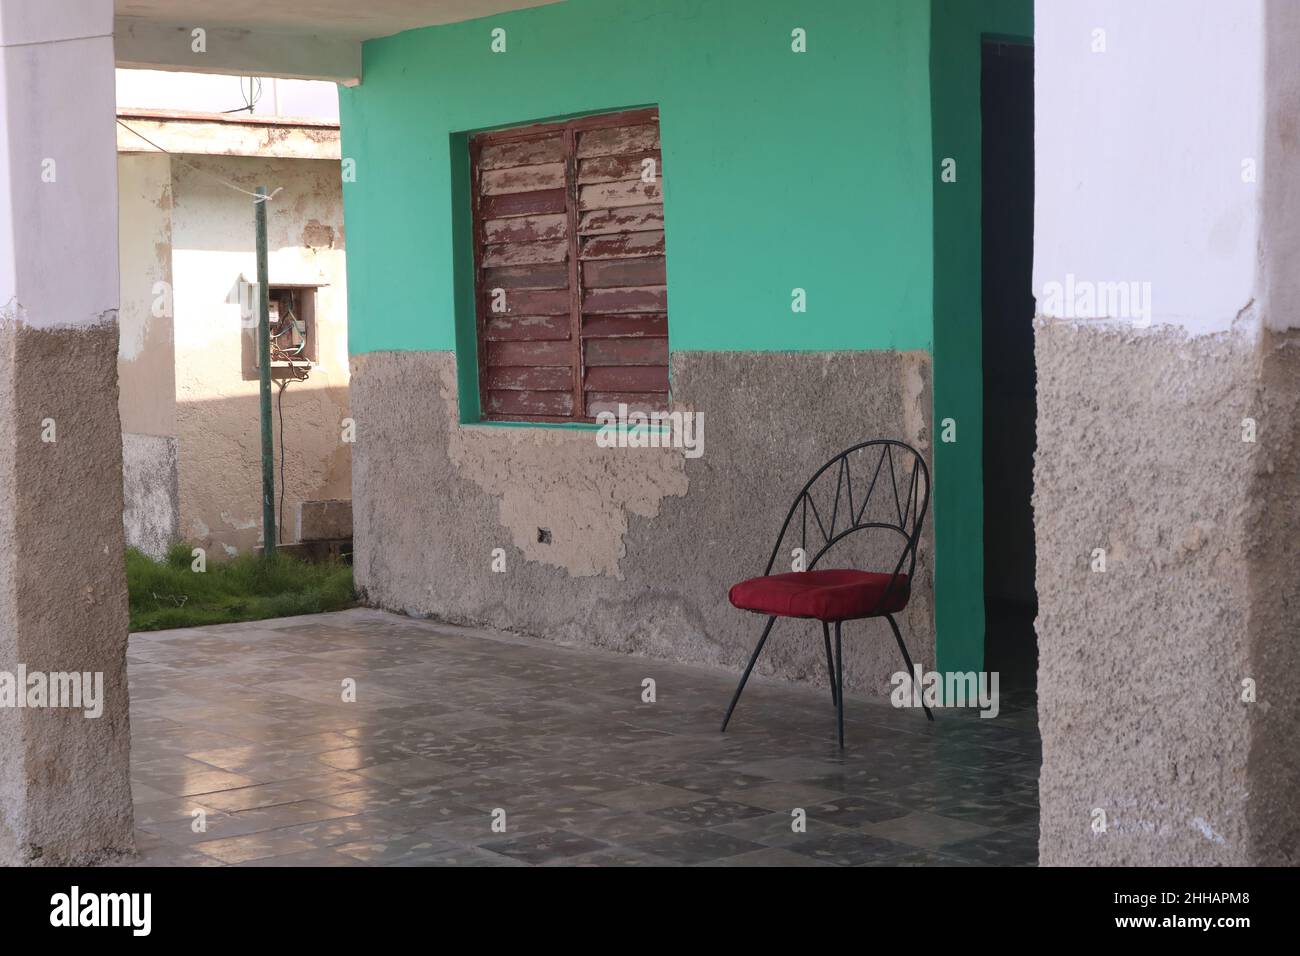 Siège vide sur la porte de la maison à la Havane, près de l'océan.Concept d'attente.Concept de manque d'illusion. Banque D'Images